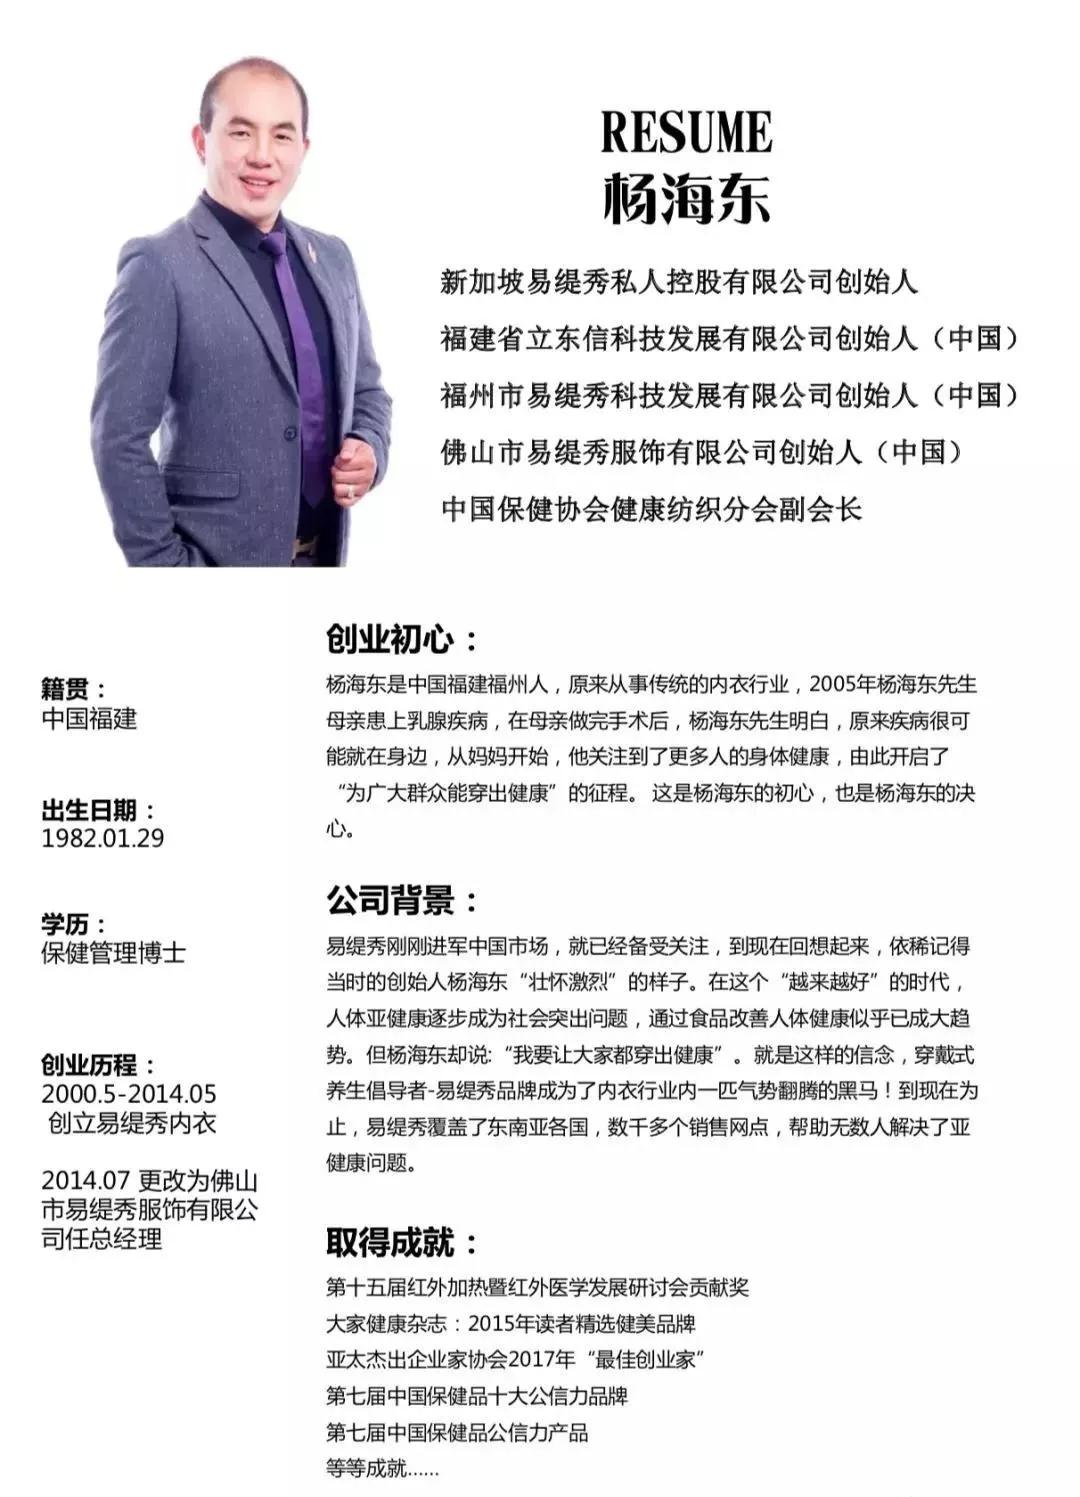 演讲预告易缇秀创始人杨海东将在新加坡国立大学发表公开演讲